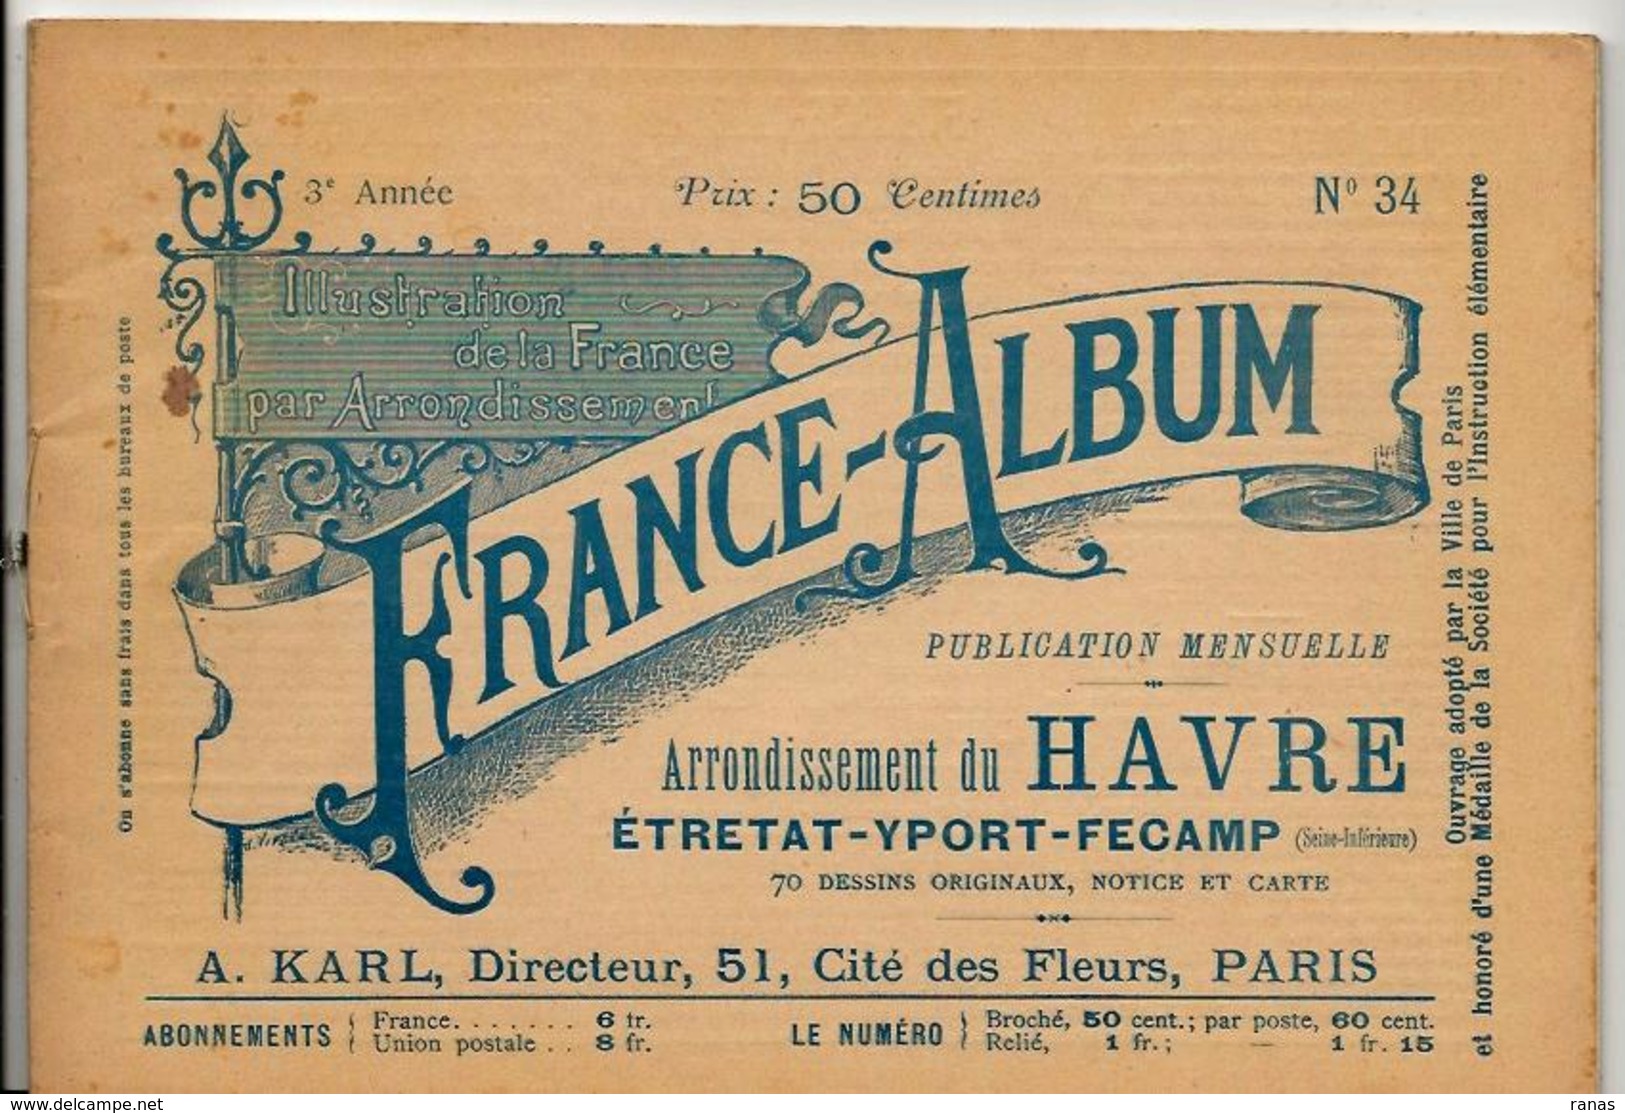 Seine Inférieure France Album De A. KARL, Carte Gravures Texte Publicités 1895 - Toeristische Brochures